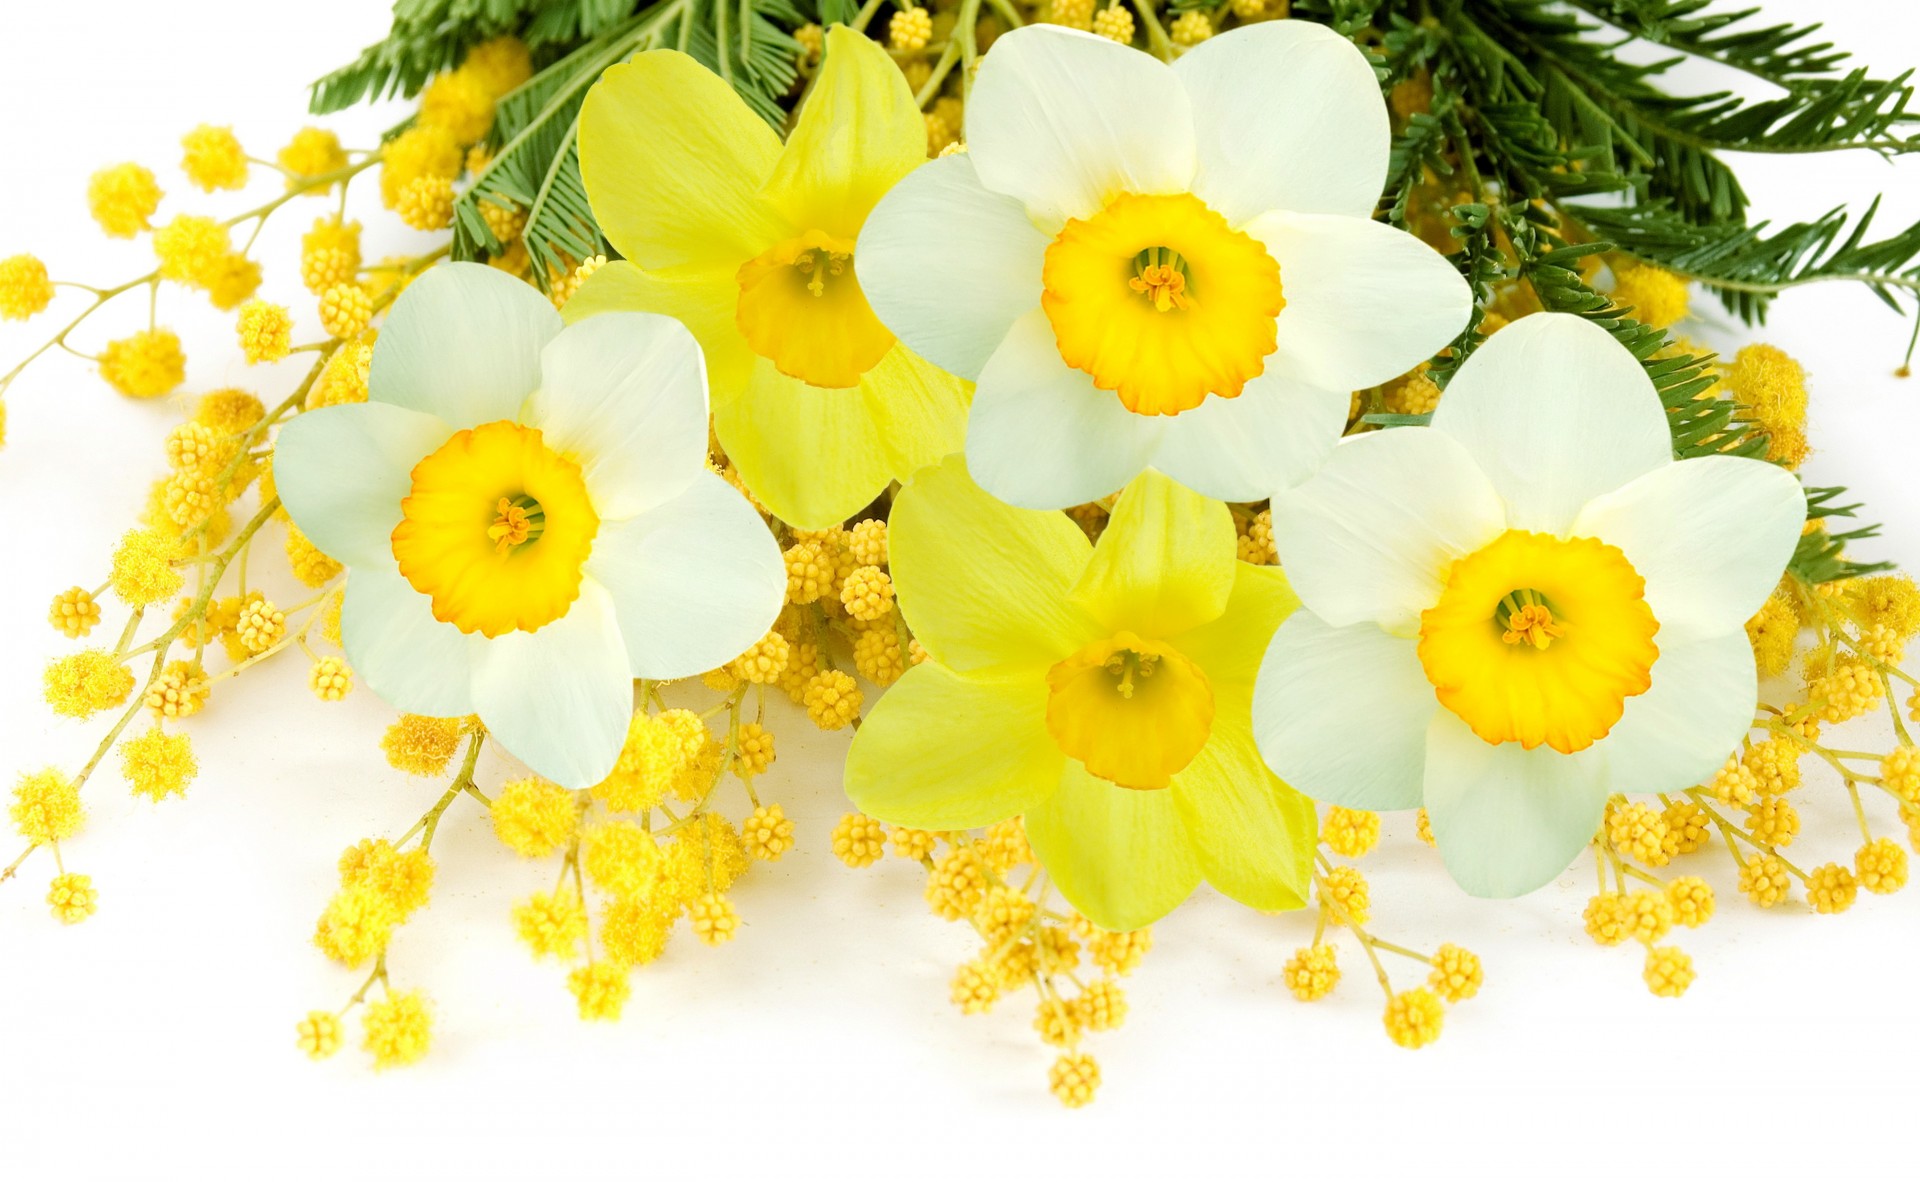 narcissy tonkij cvety zheltyj vesnoj belyj mimoza